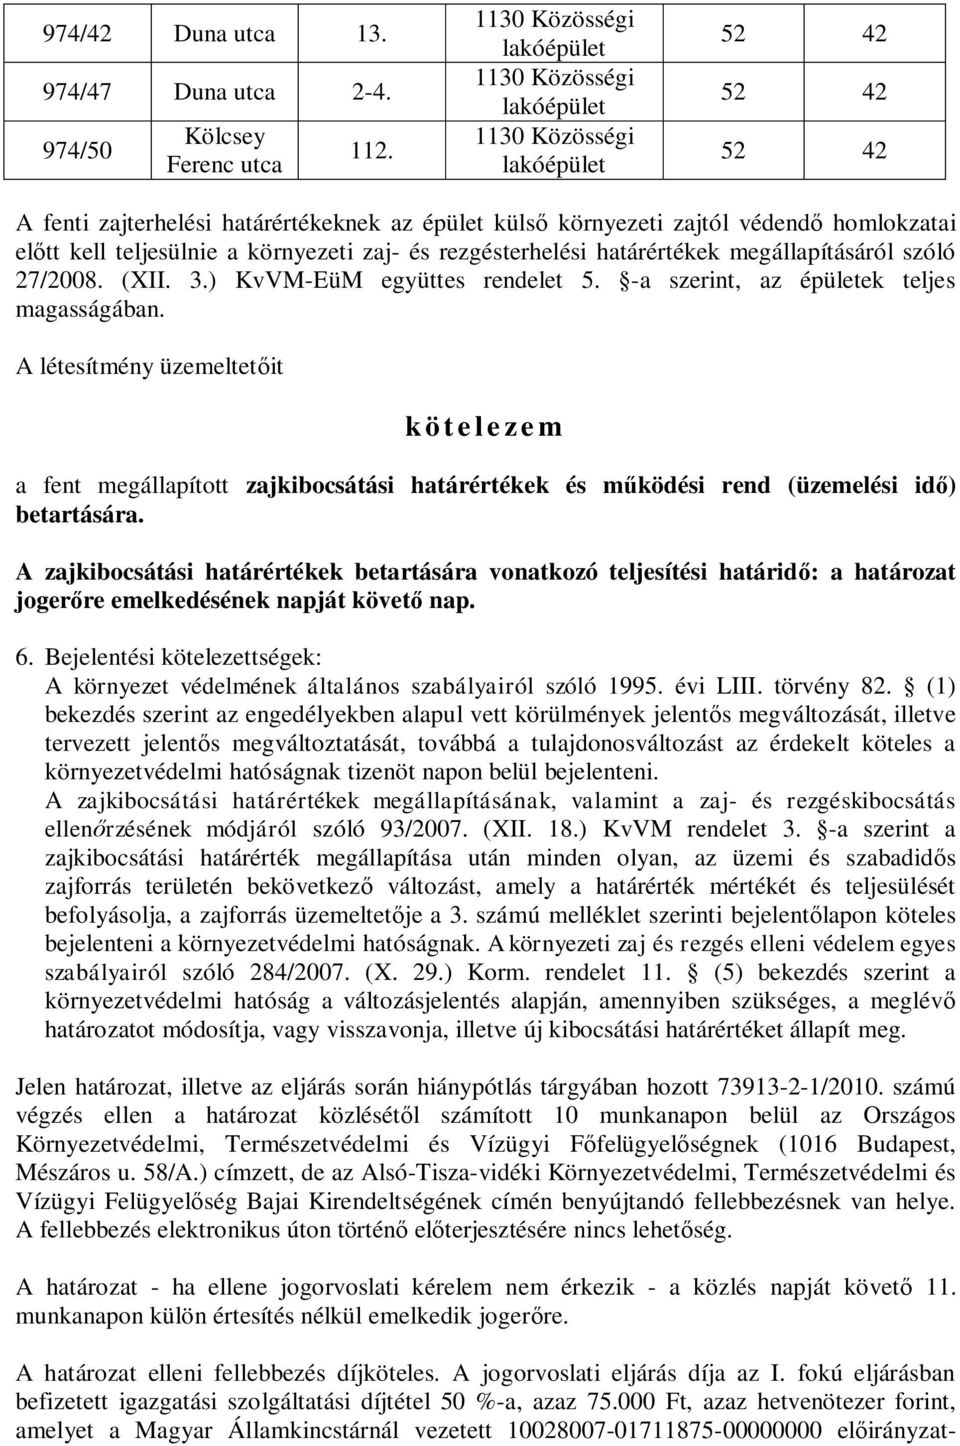 27/2008. (XII. 3.) KvVM-EüM együttes rendelet 5. -a szerint, az ek teljes magasságában.